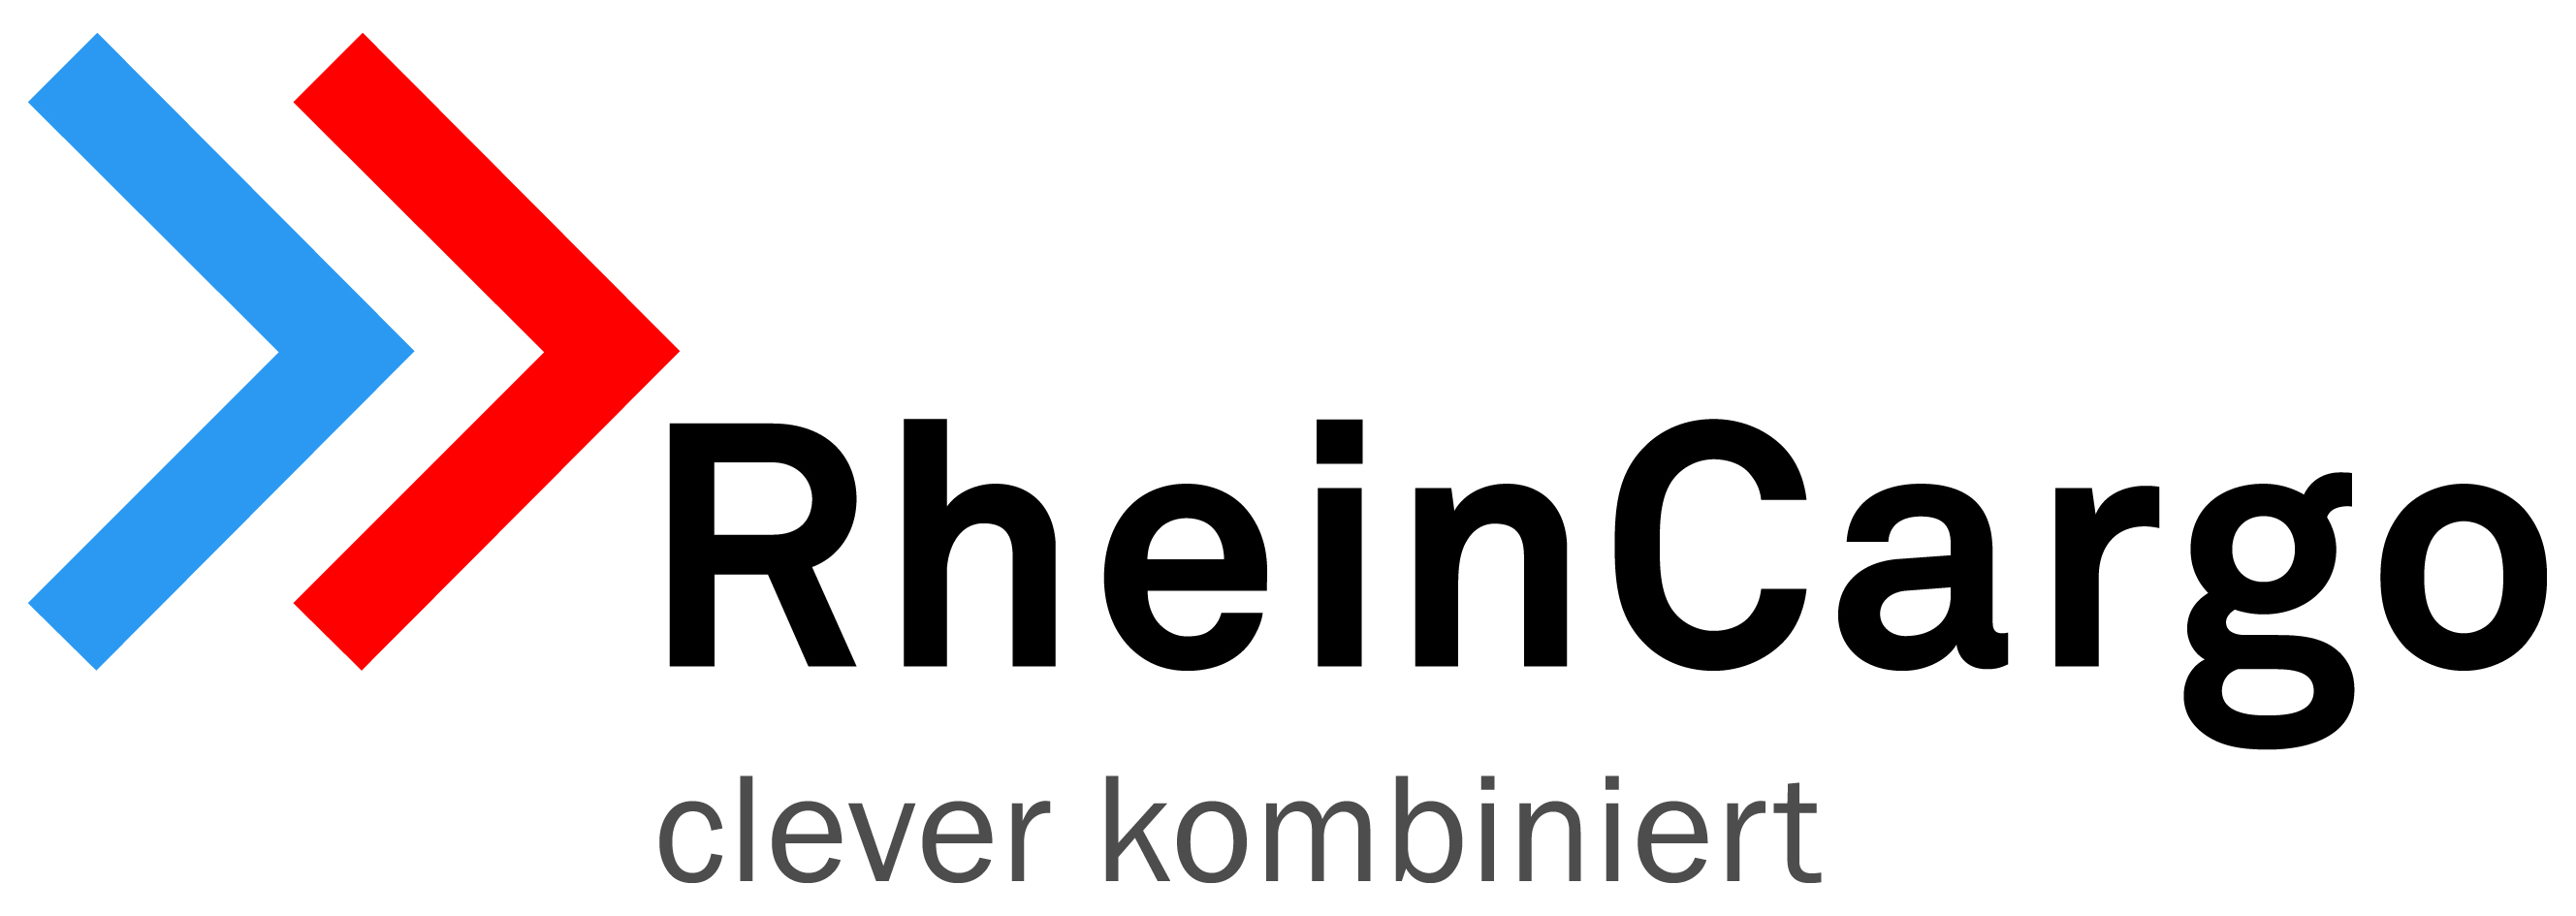 RheinCargo GmbH & Co. KG